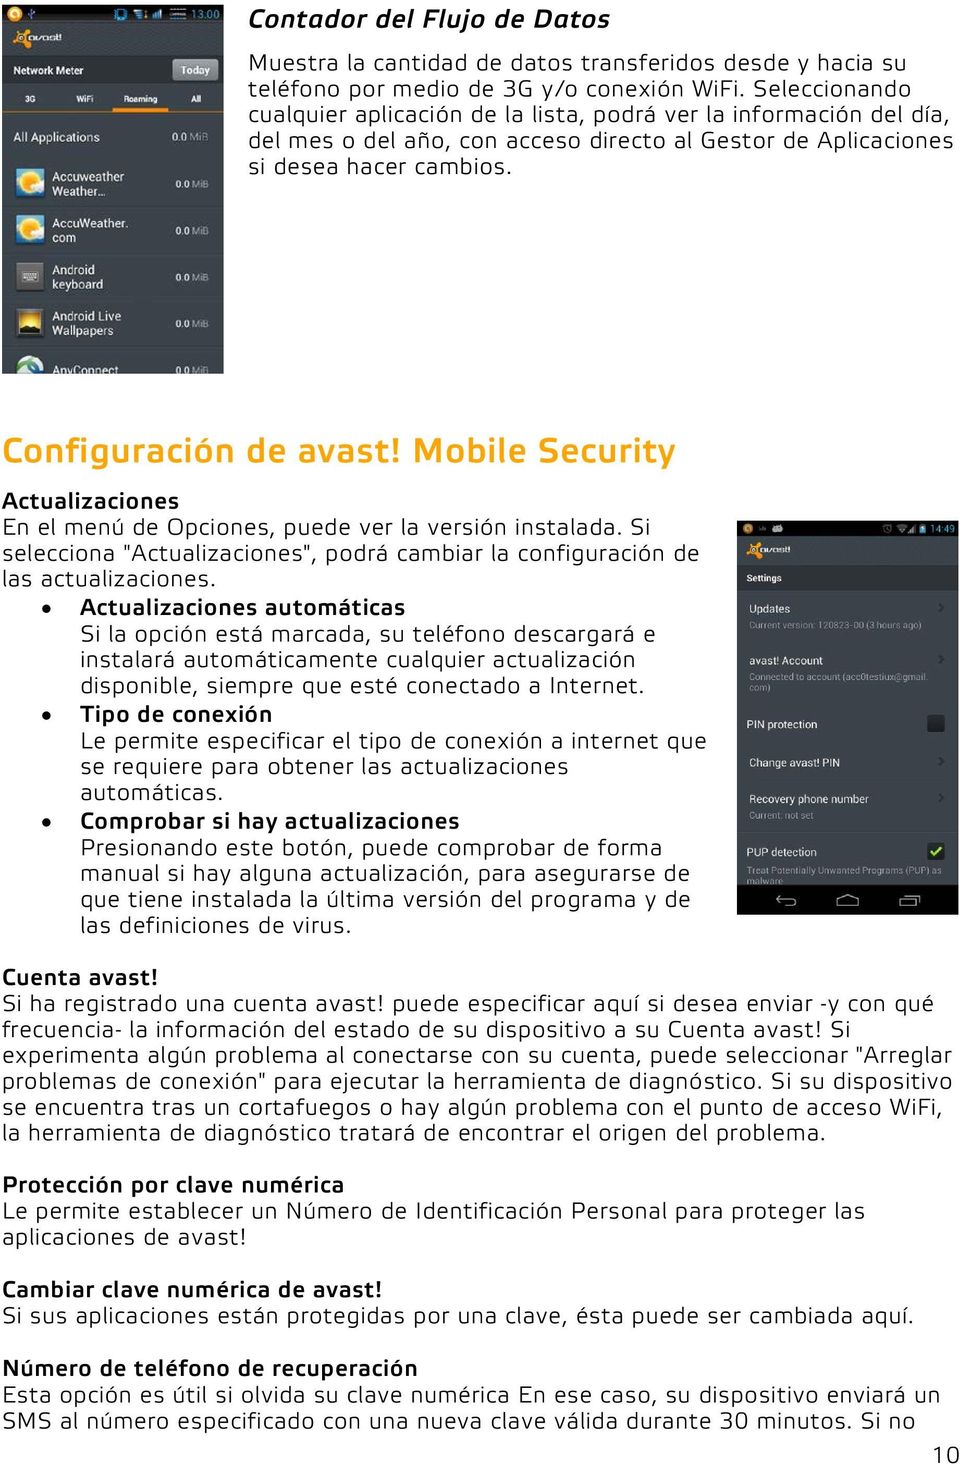 Mobile Security Actualizaciones En el menú de Opciones, puede ver la versión instalada. Si selecciona "Actualizaciones", podrá cambiar la configuración de las actualizaciones.